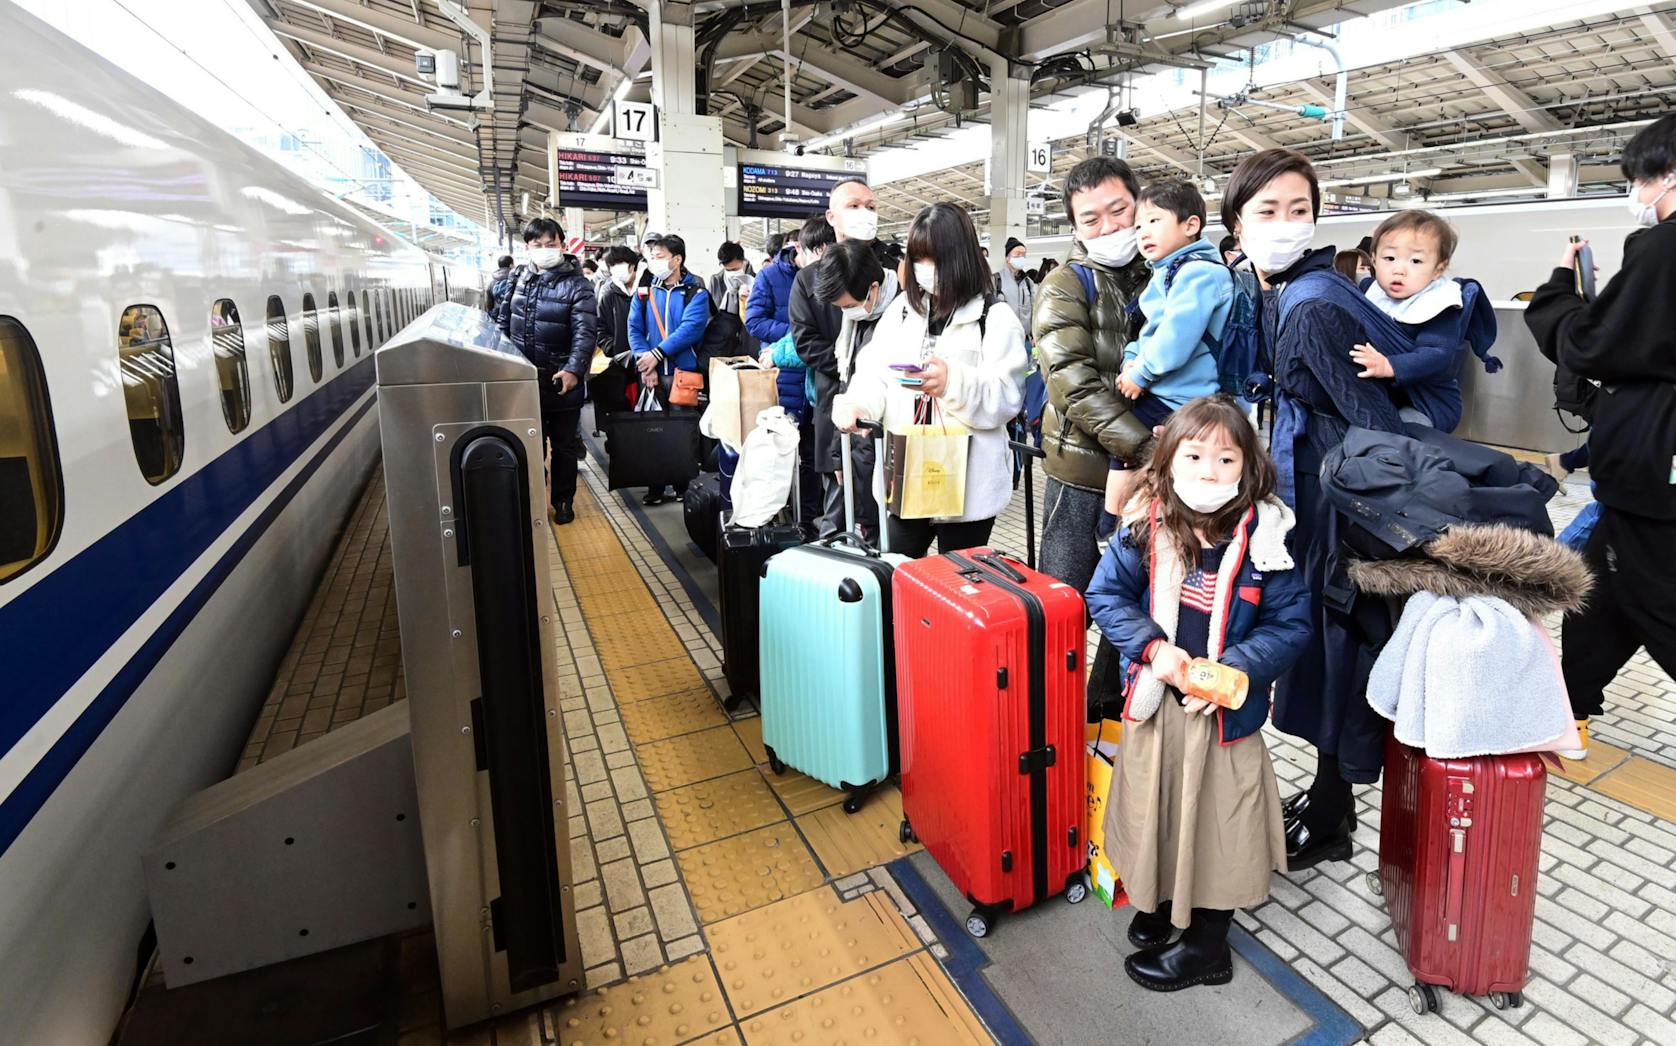 帰省ラッシュで混雑する東海道新幹線のホーム（29日午前、JR東京駅）
